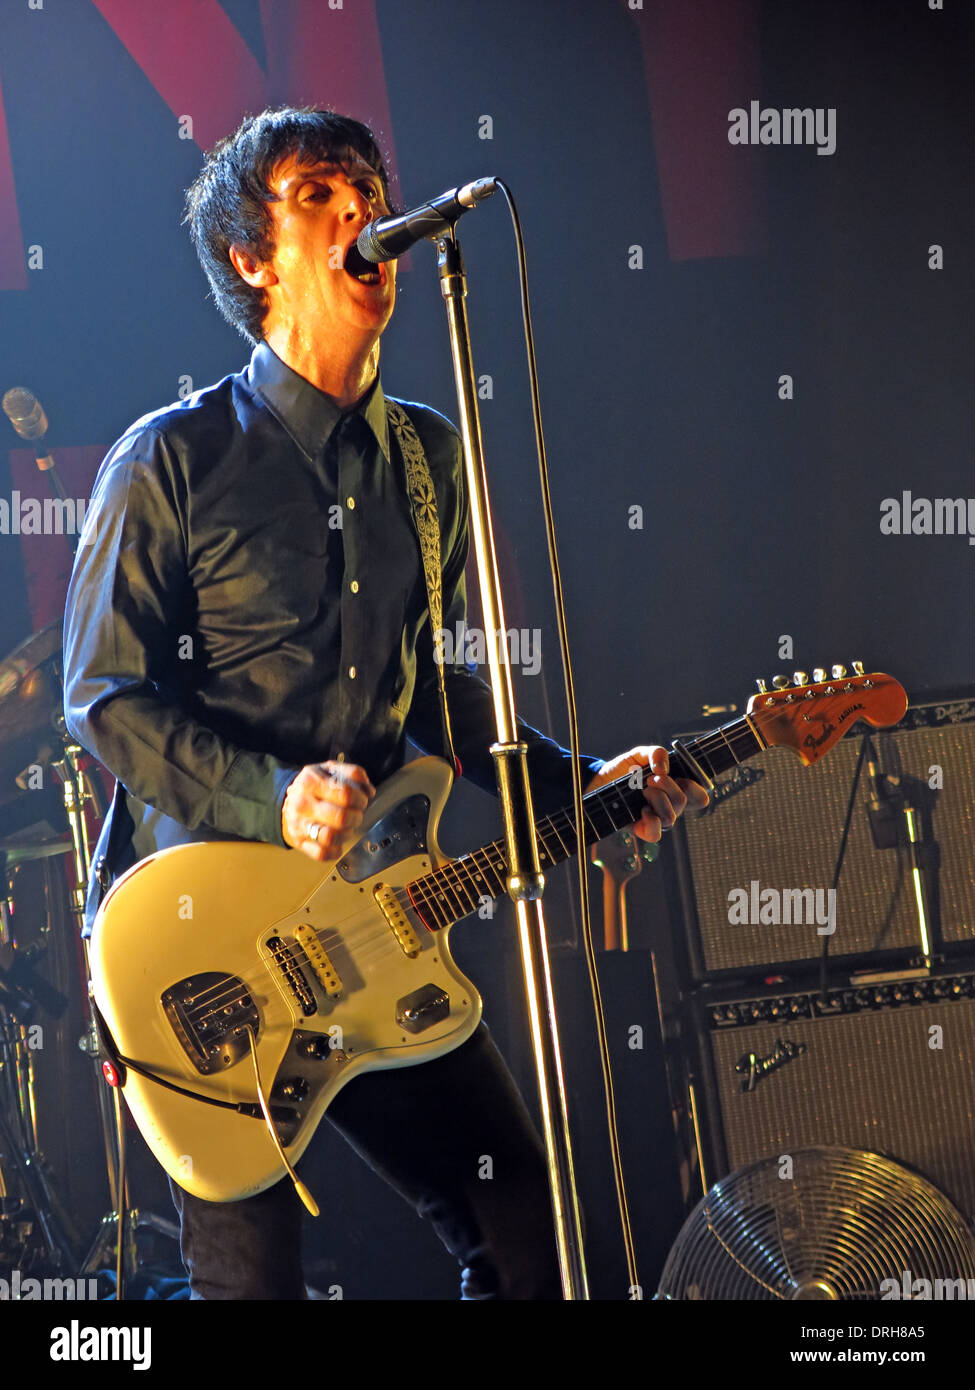 Johnny Marr des Smiths Manchester Academy en direct sur scène jouer guitare Fender England UK 2013 12-10-2013 Banque D'Images